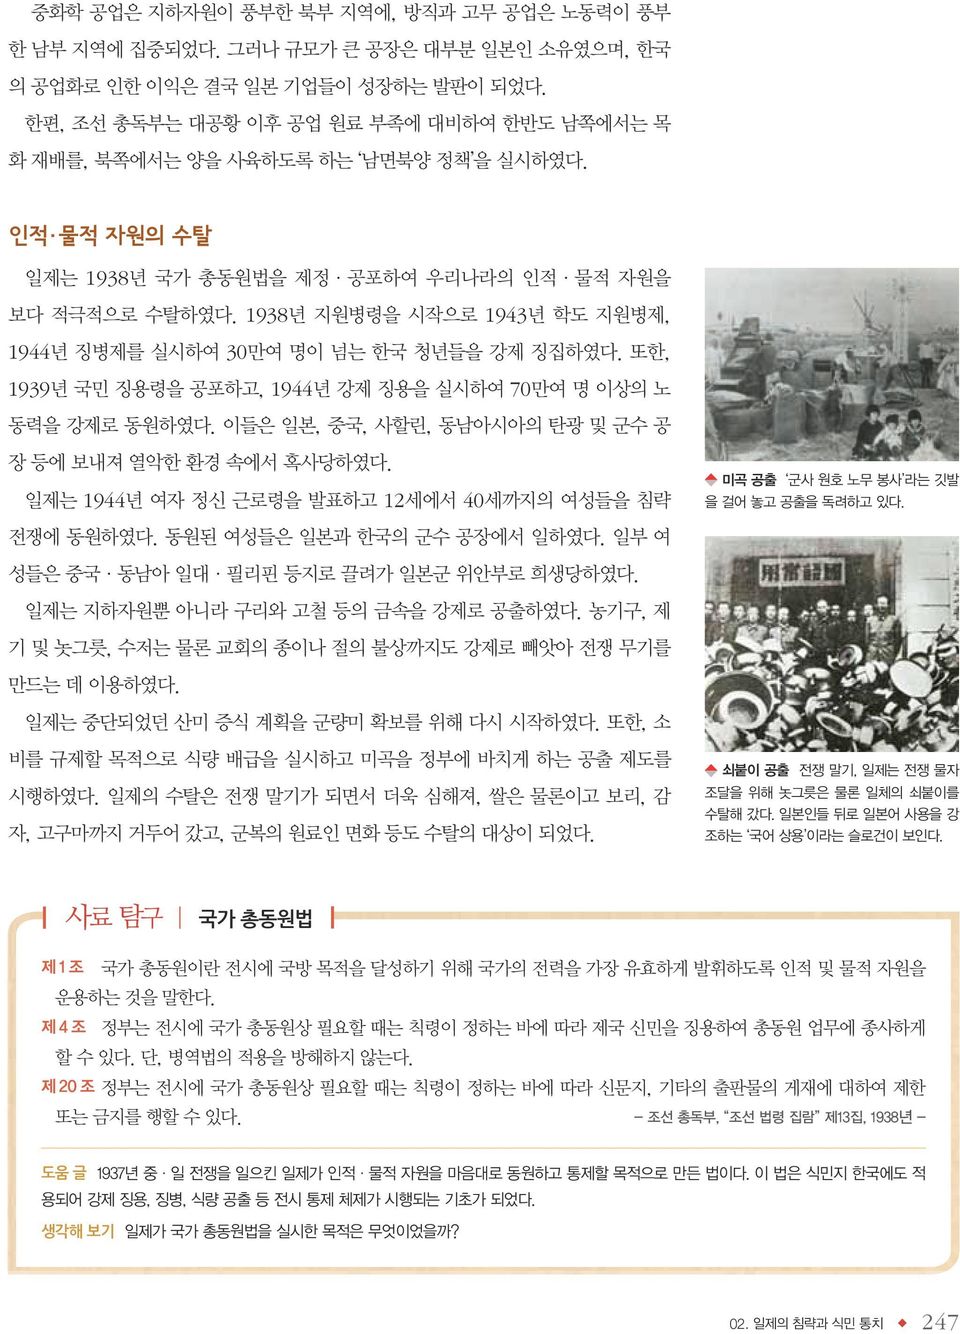 1938년 지원병령을 시작으로 1943년 학도 지원병제, 1944년 징병제를 실시하여 30만여 명이 넘는 한국 청년들을 강제 징집하였다. 또한, 1939년 국민 징용령을 공포하고, 1944년 강제 징용을 실시하여 70만여 명 이상의 노 동력을 강제로 동원하였다.